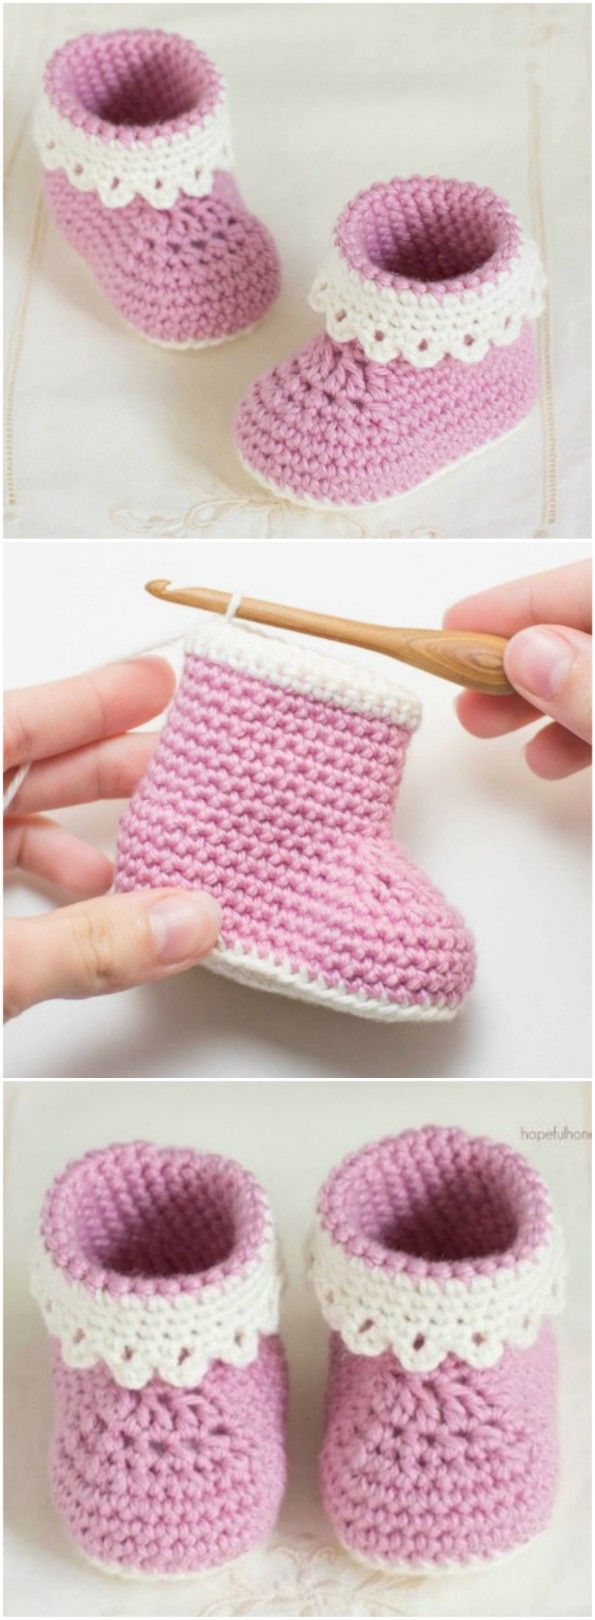 Crochet Baby Booties Pattern Lots of The Sweetest Idea